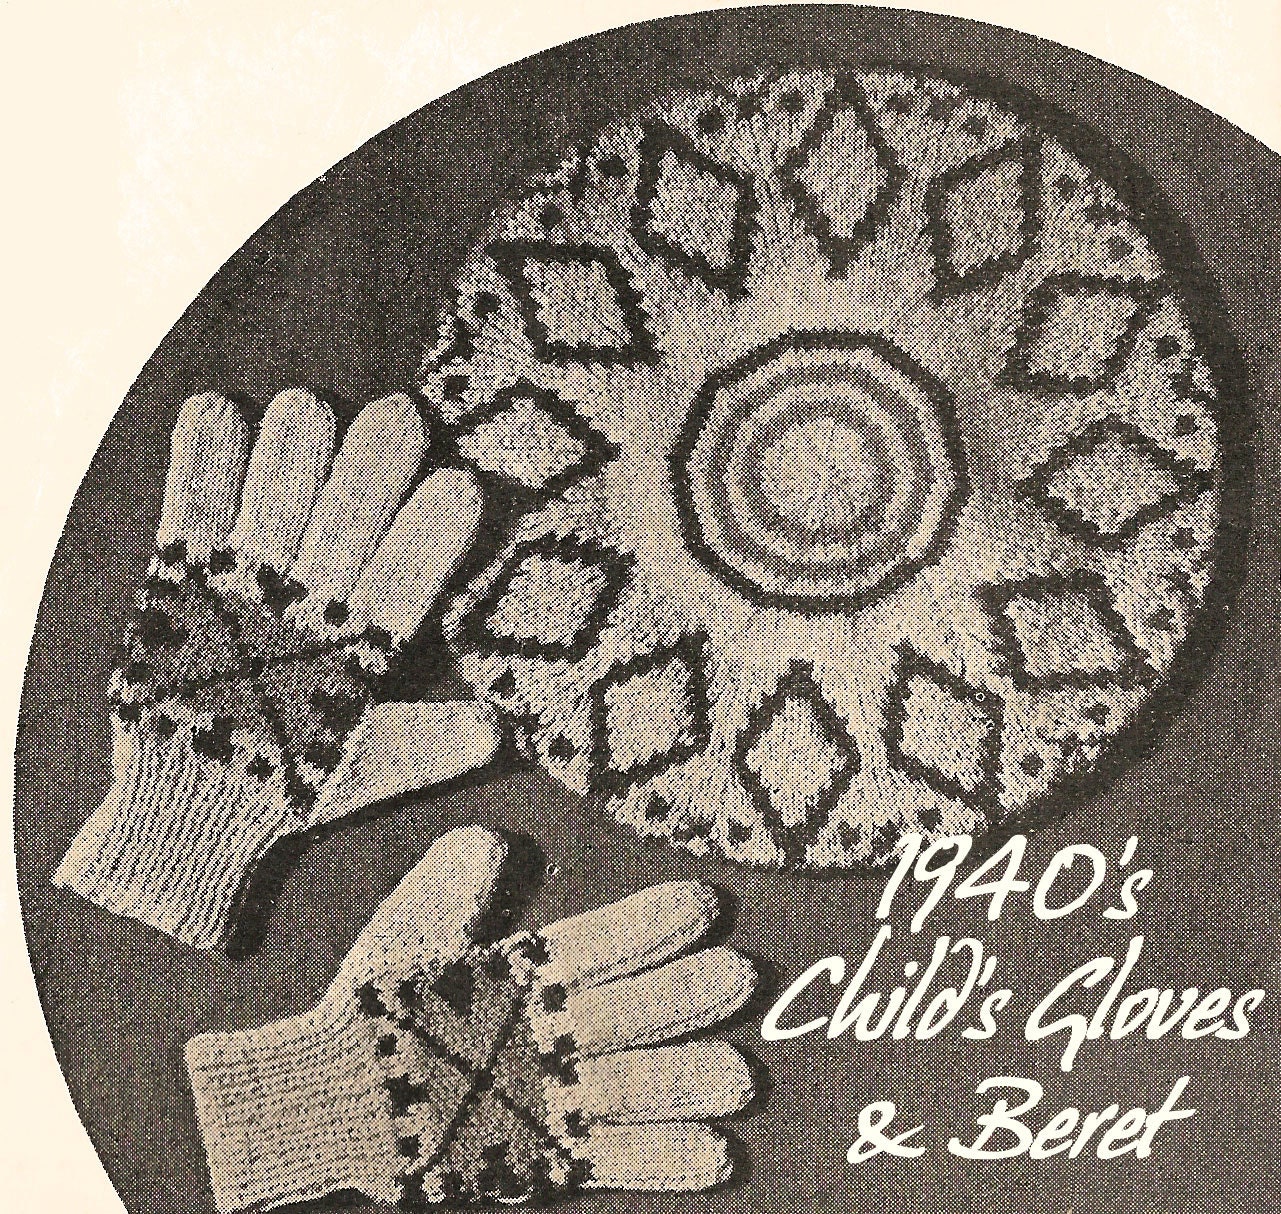 1930s Simple Bra PDF Crochet Pattern 